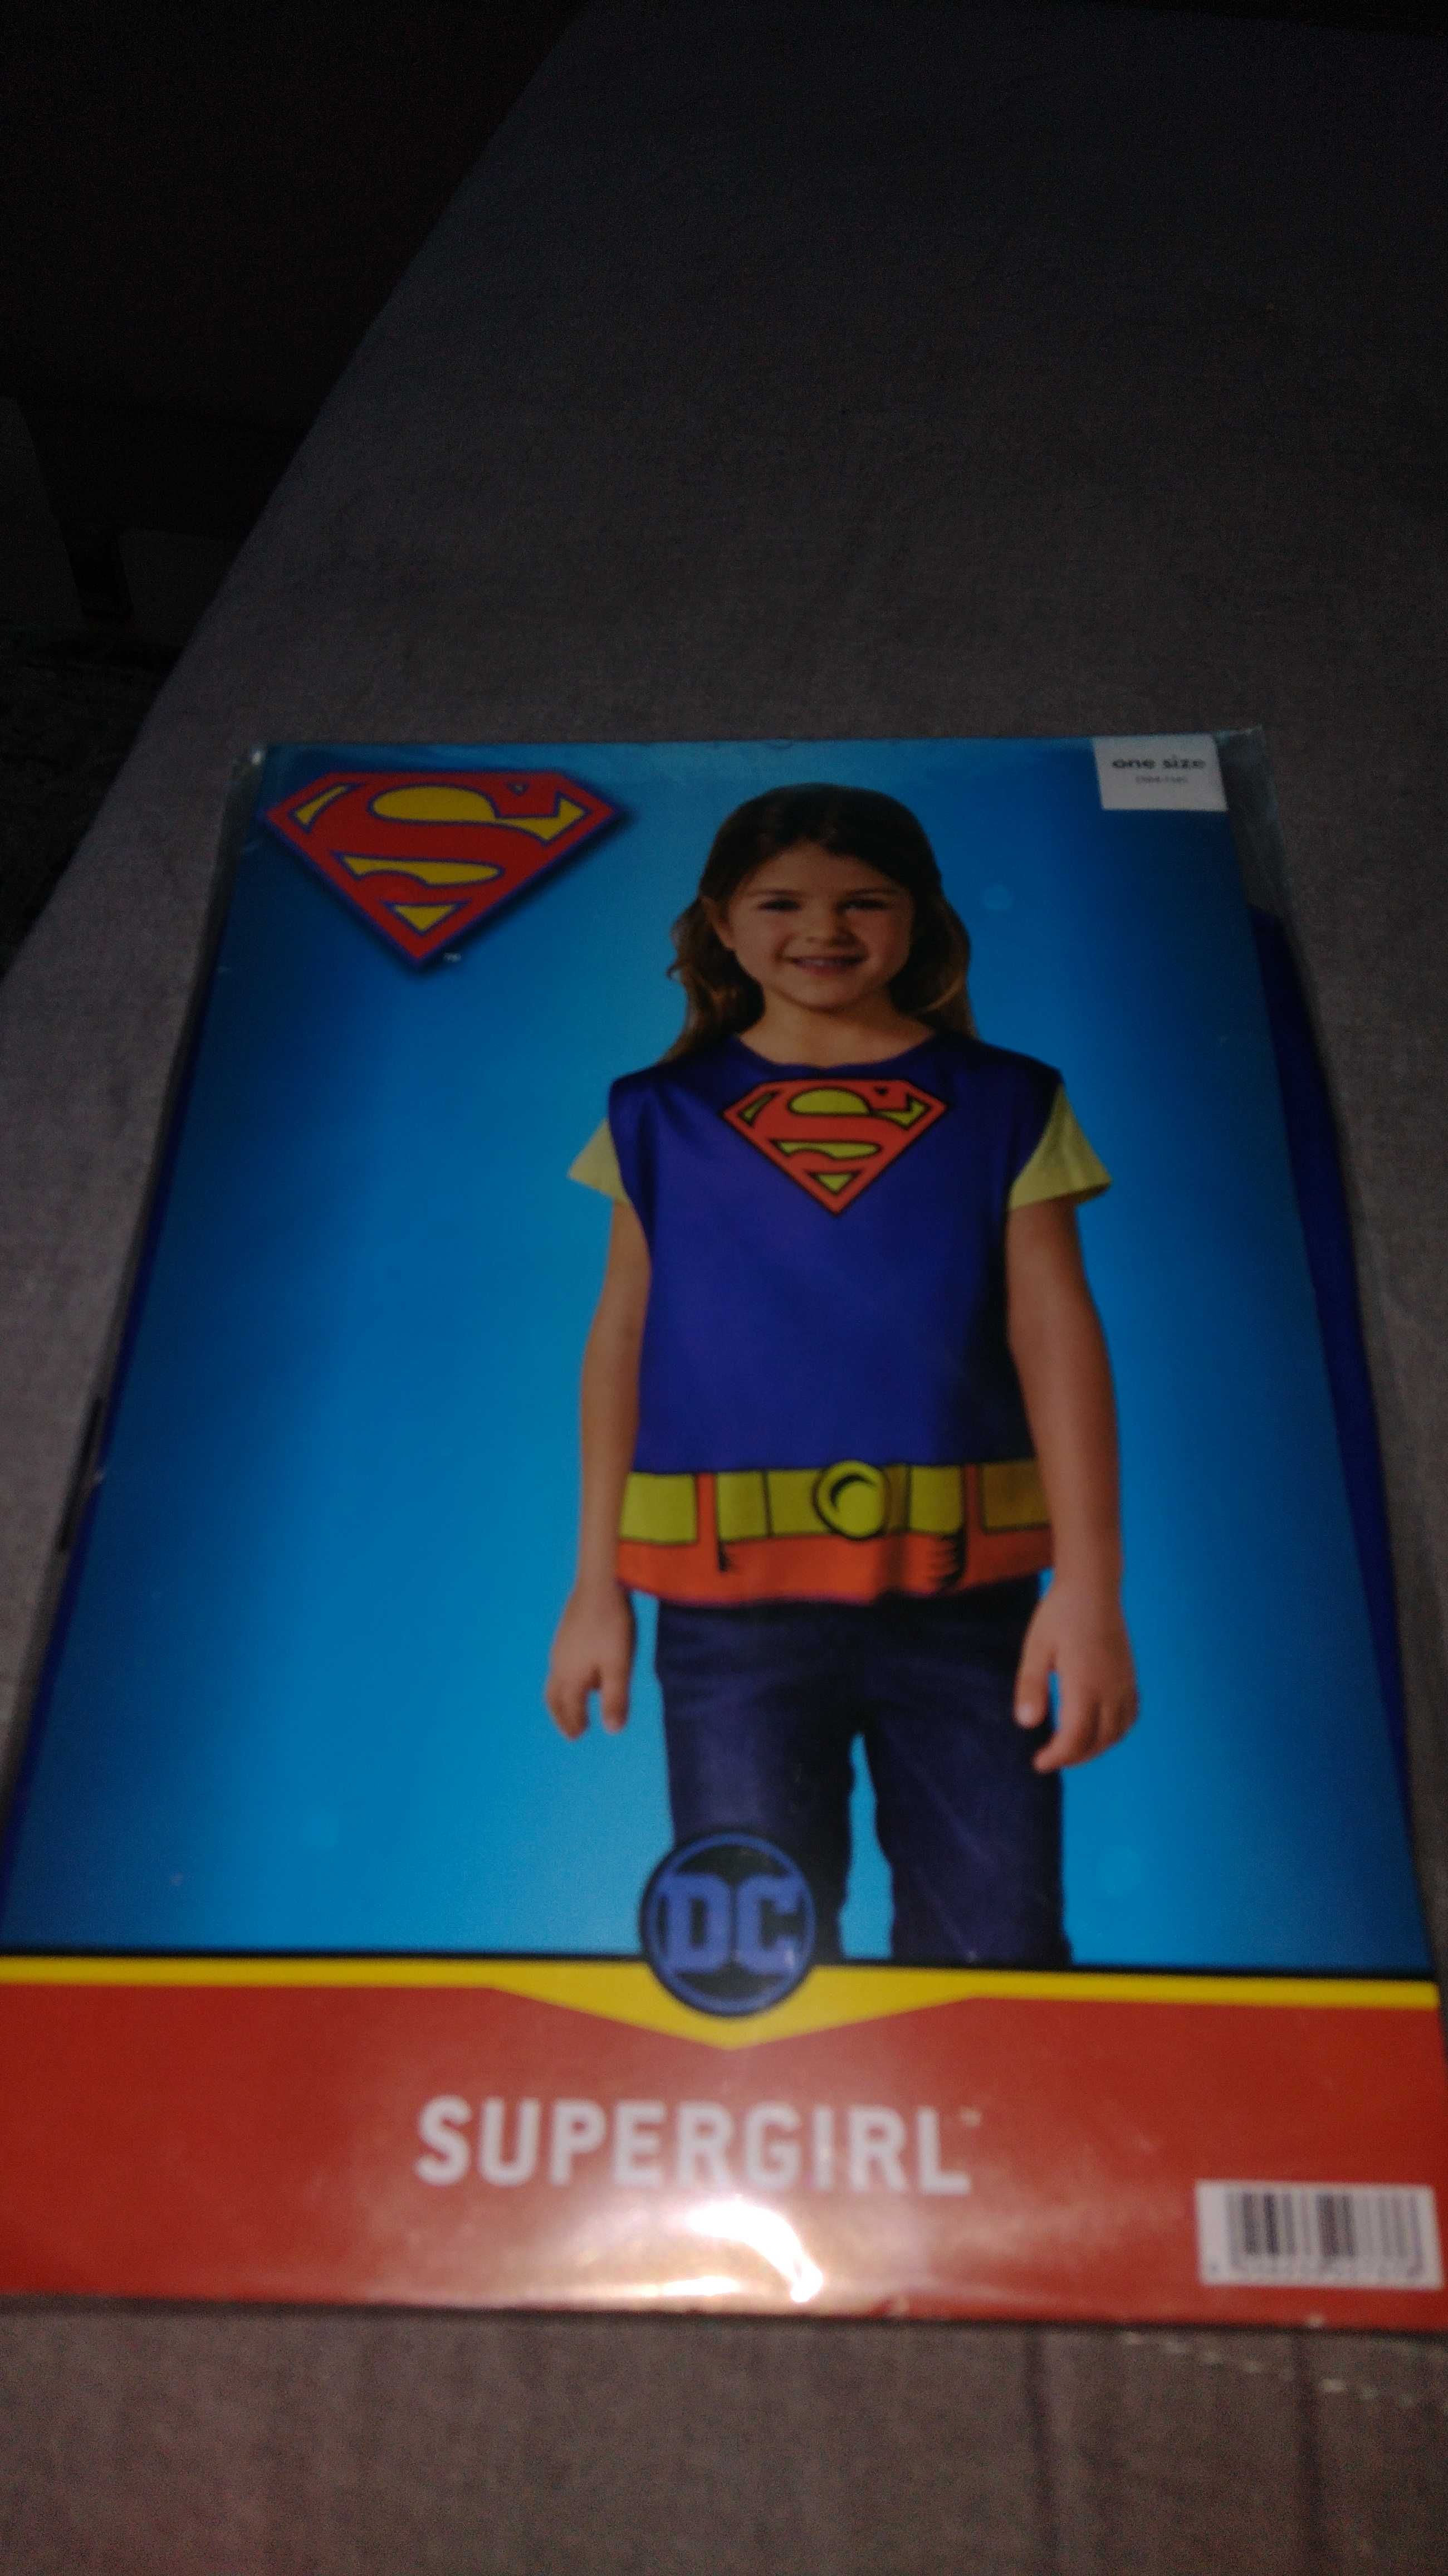 Supergirl kostium
Rozmiar one size 104-116cm